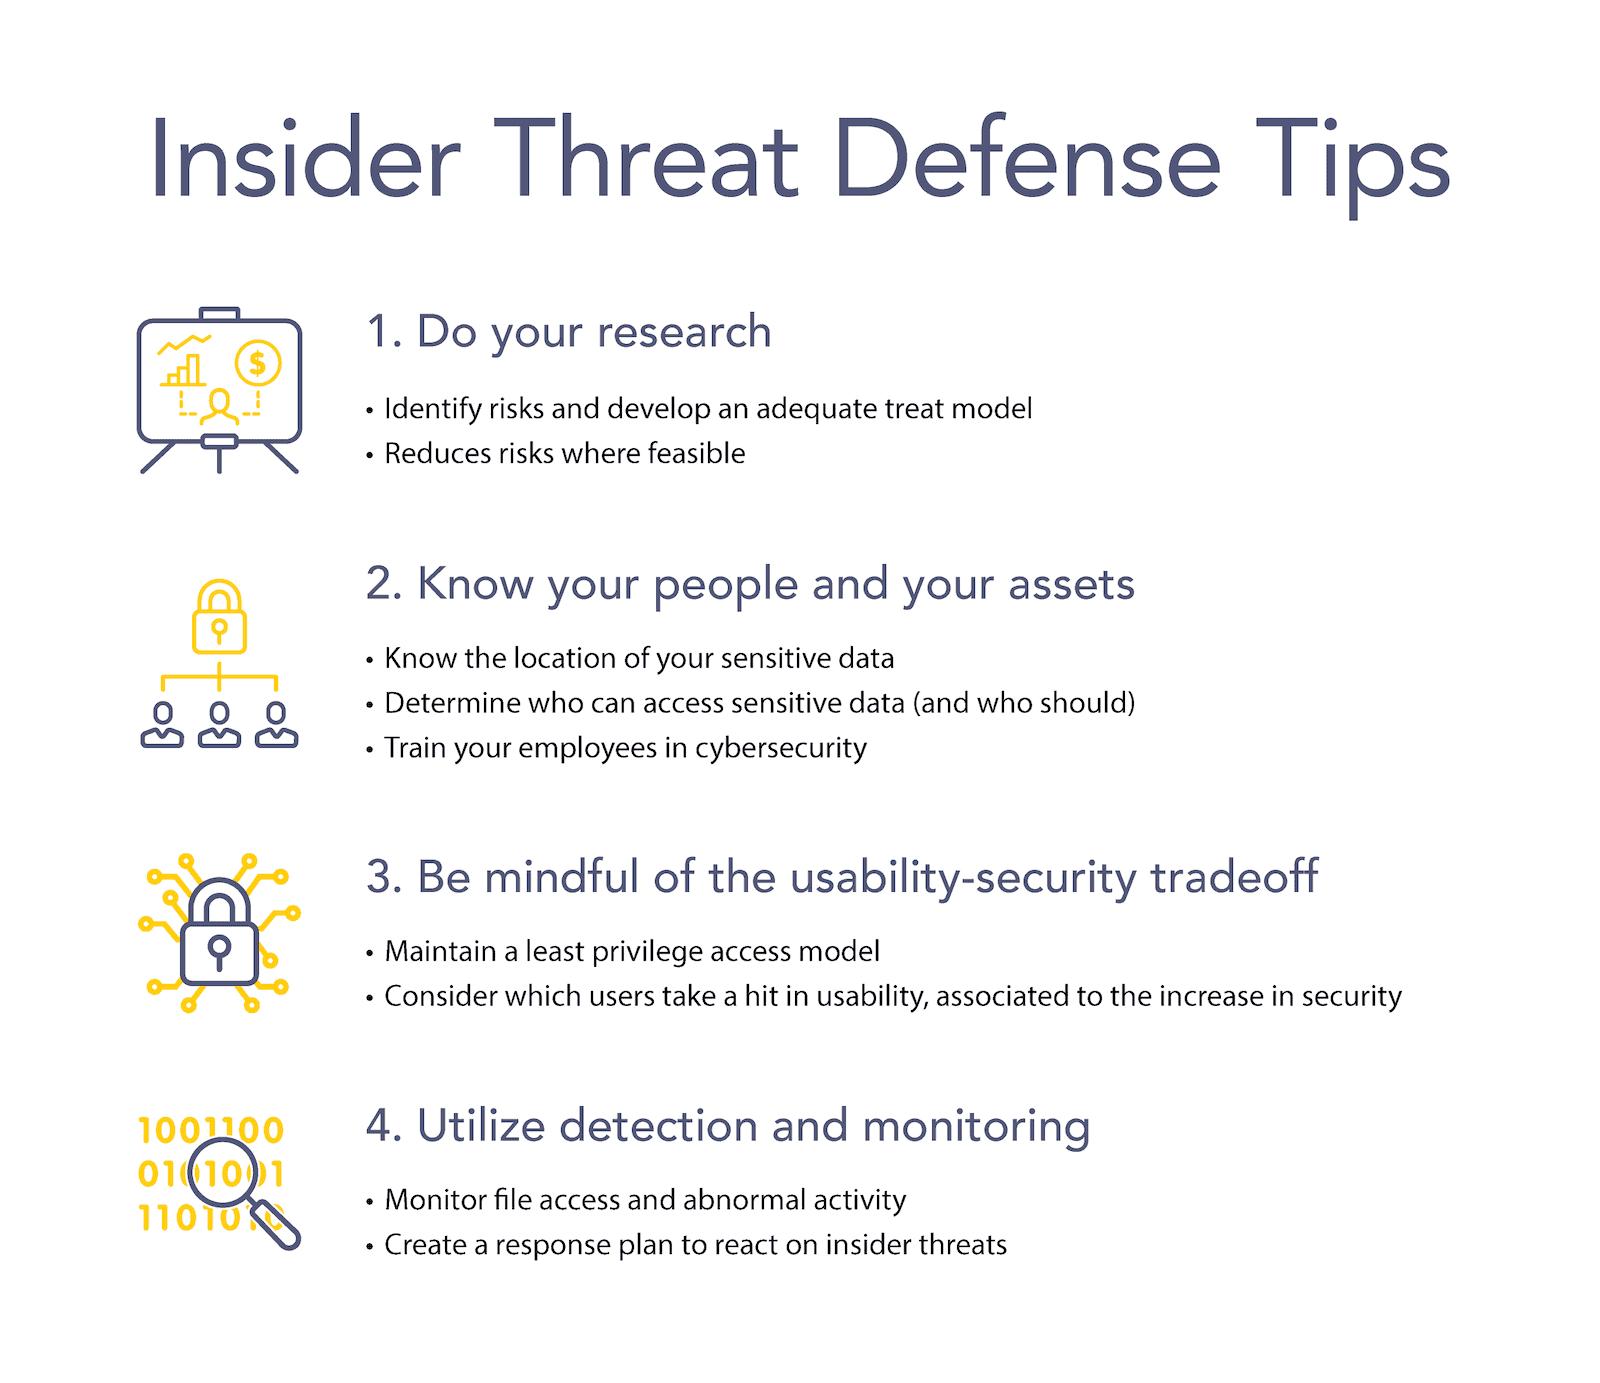 Insider threat defense tips